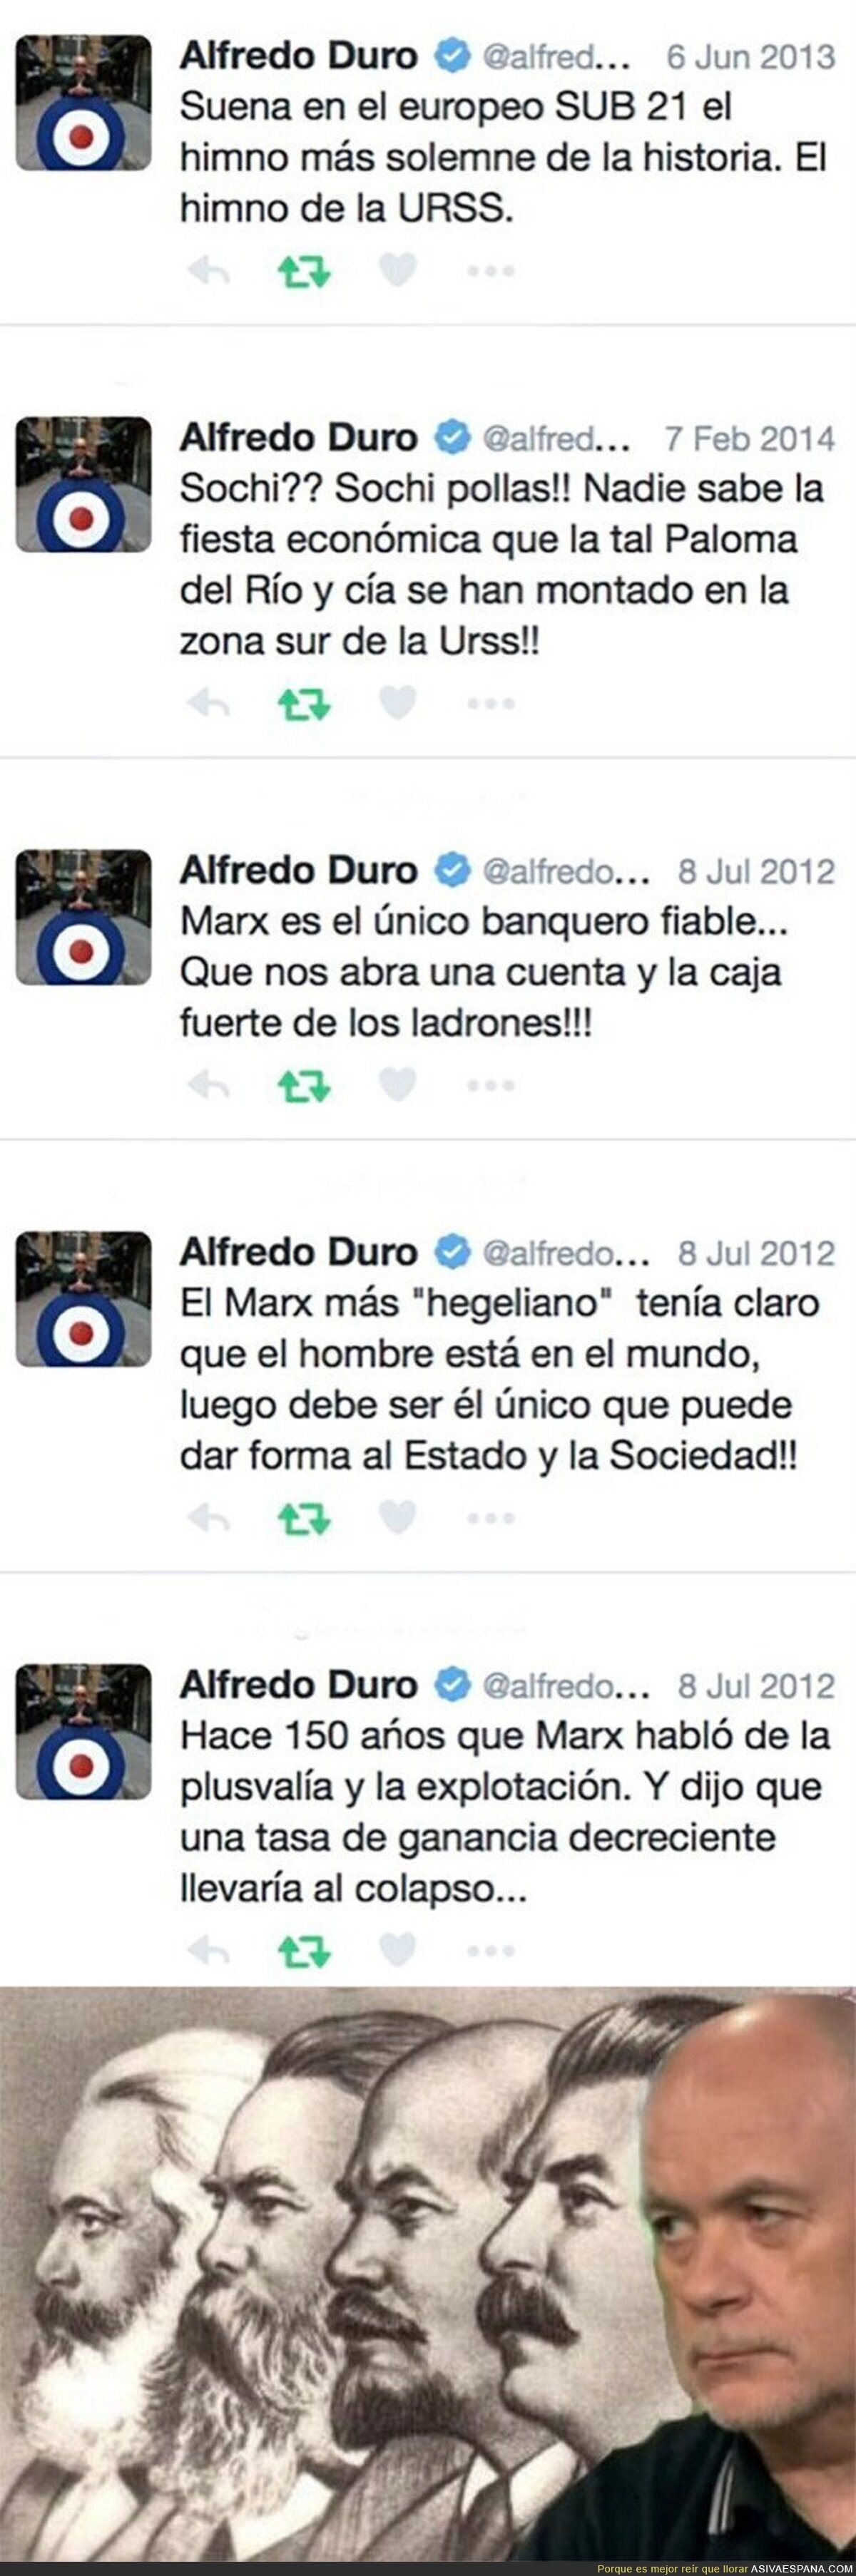 Los tuits comunistas del pasado de Alfredo Duro